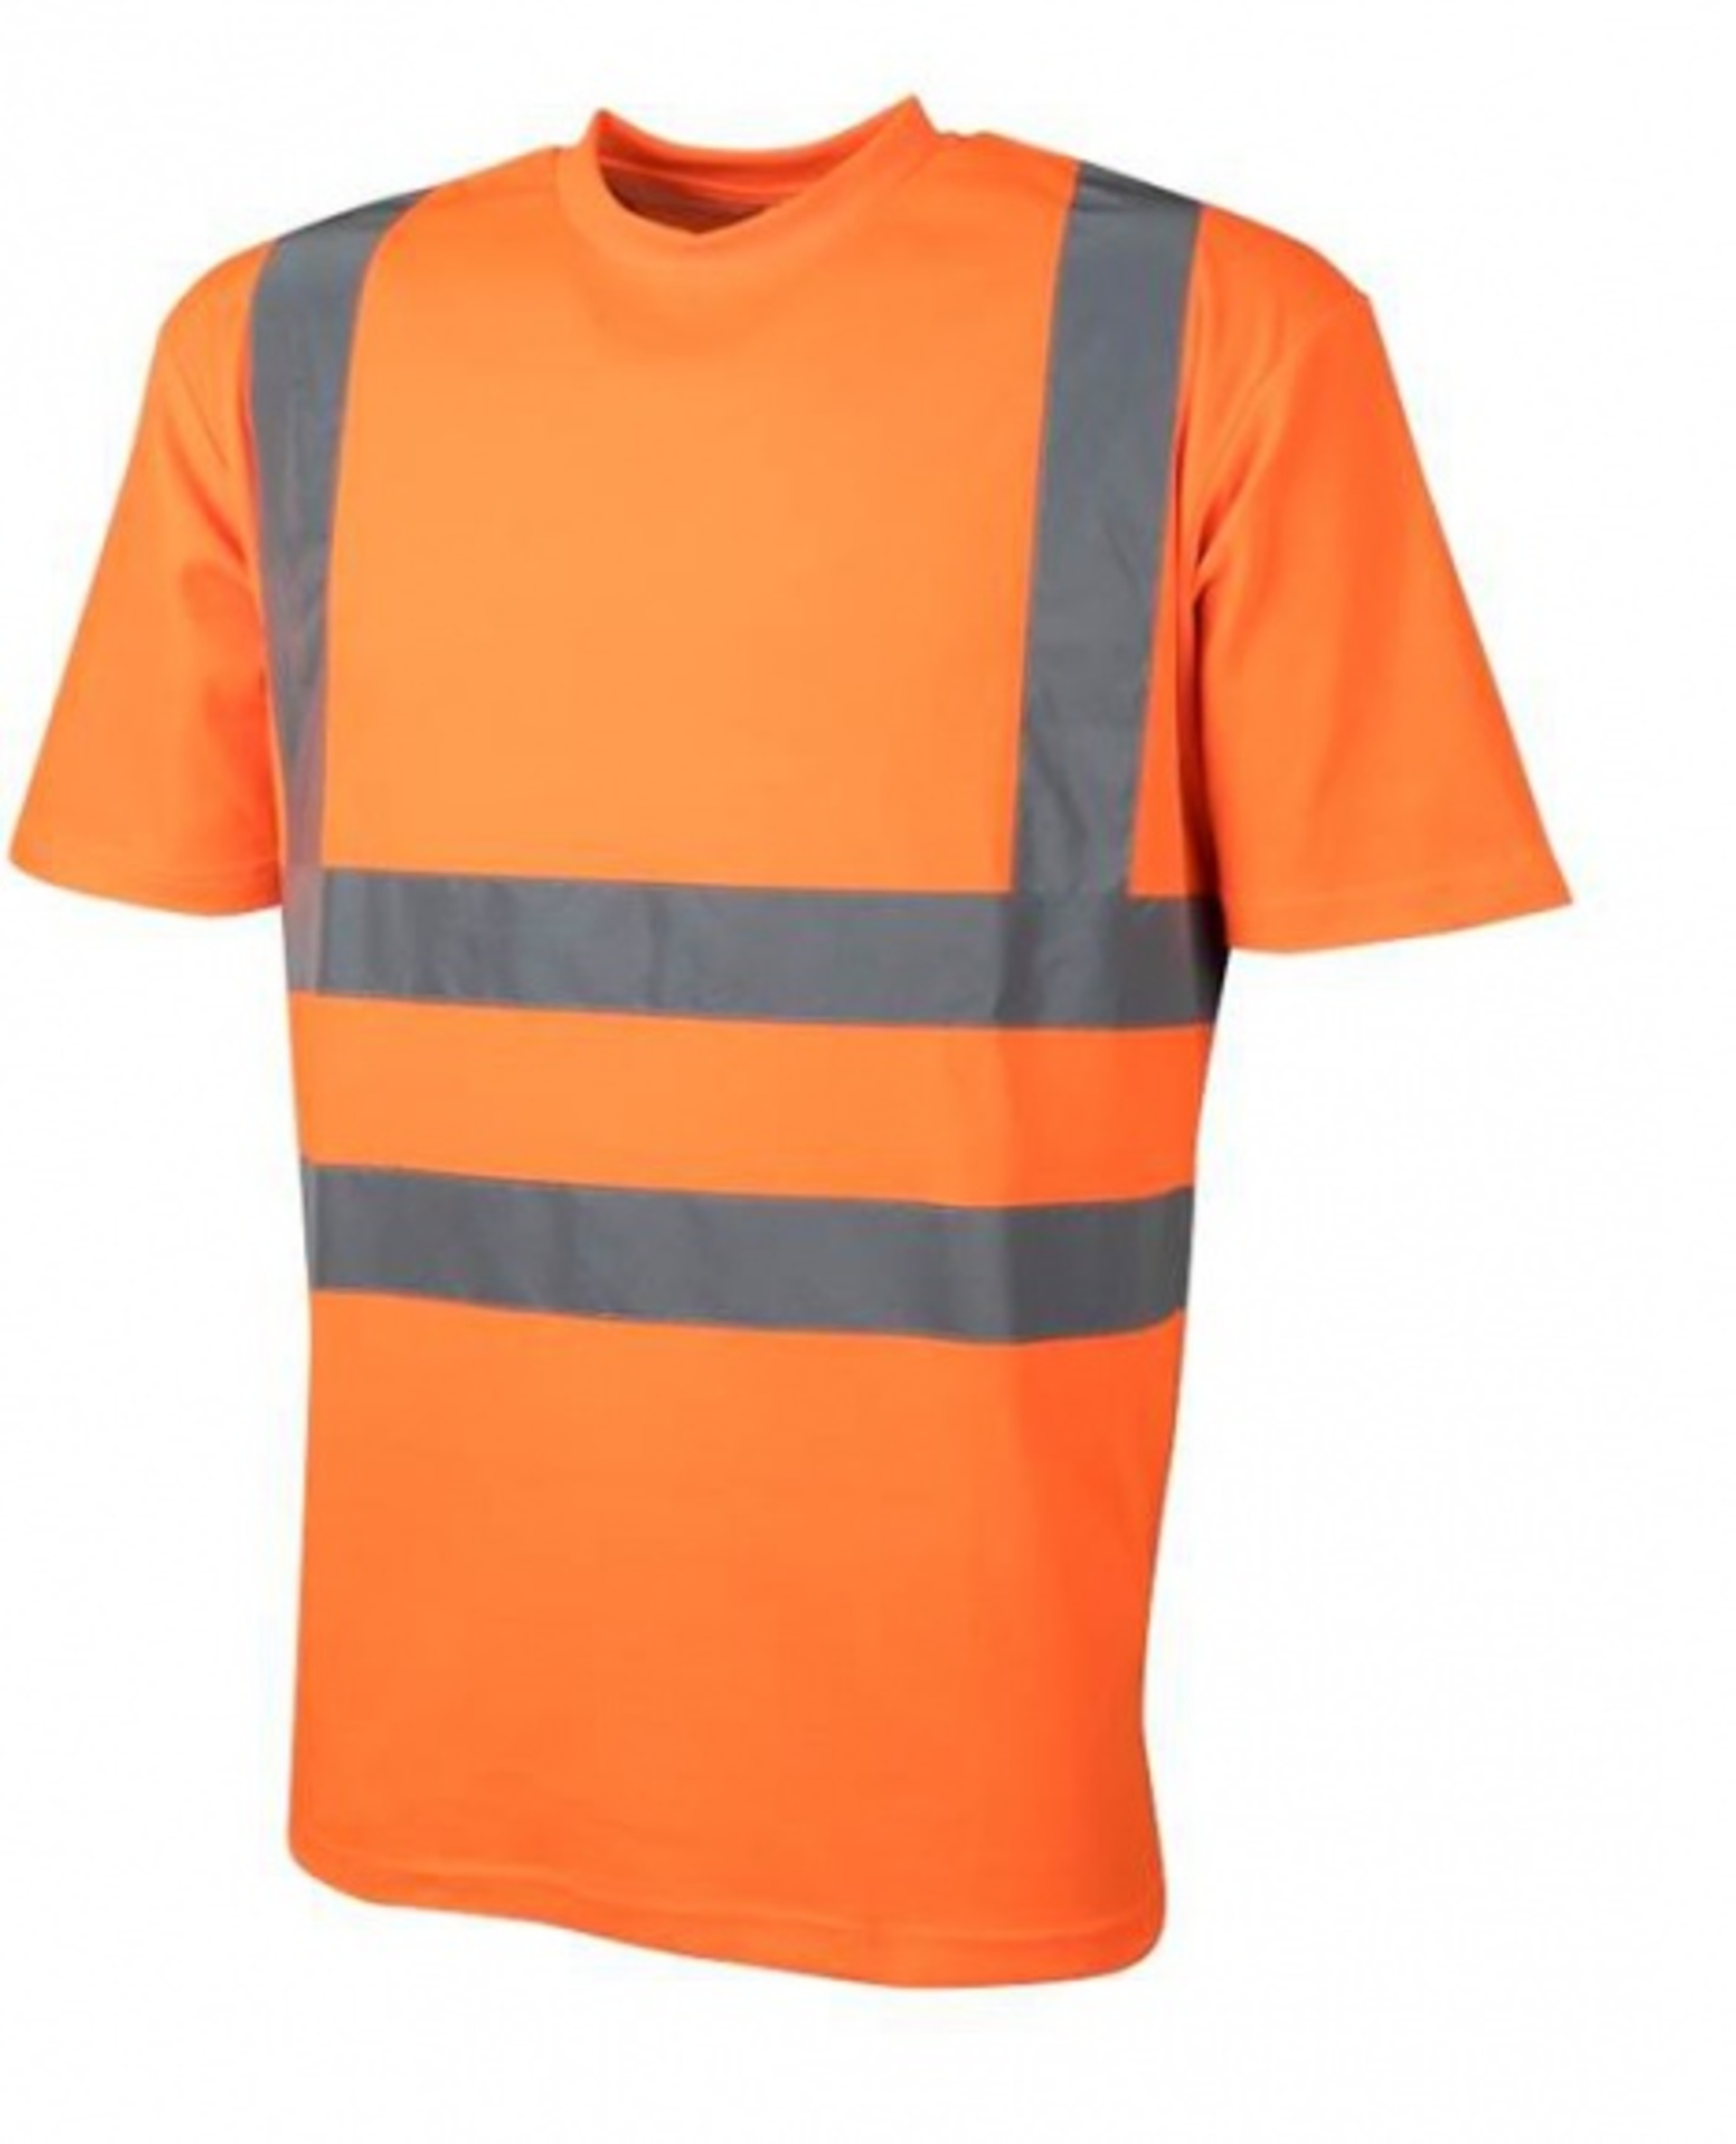 Ardon REF102 Tričko reflexní oranžová  4XL